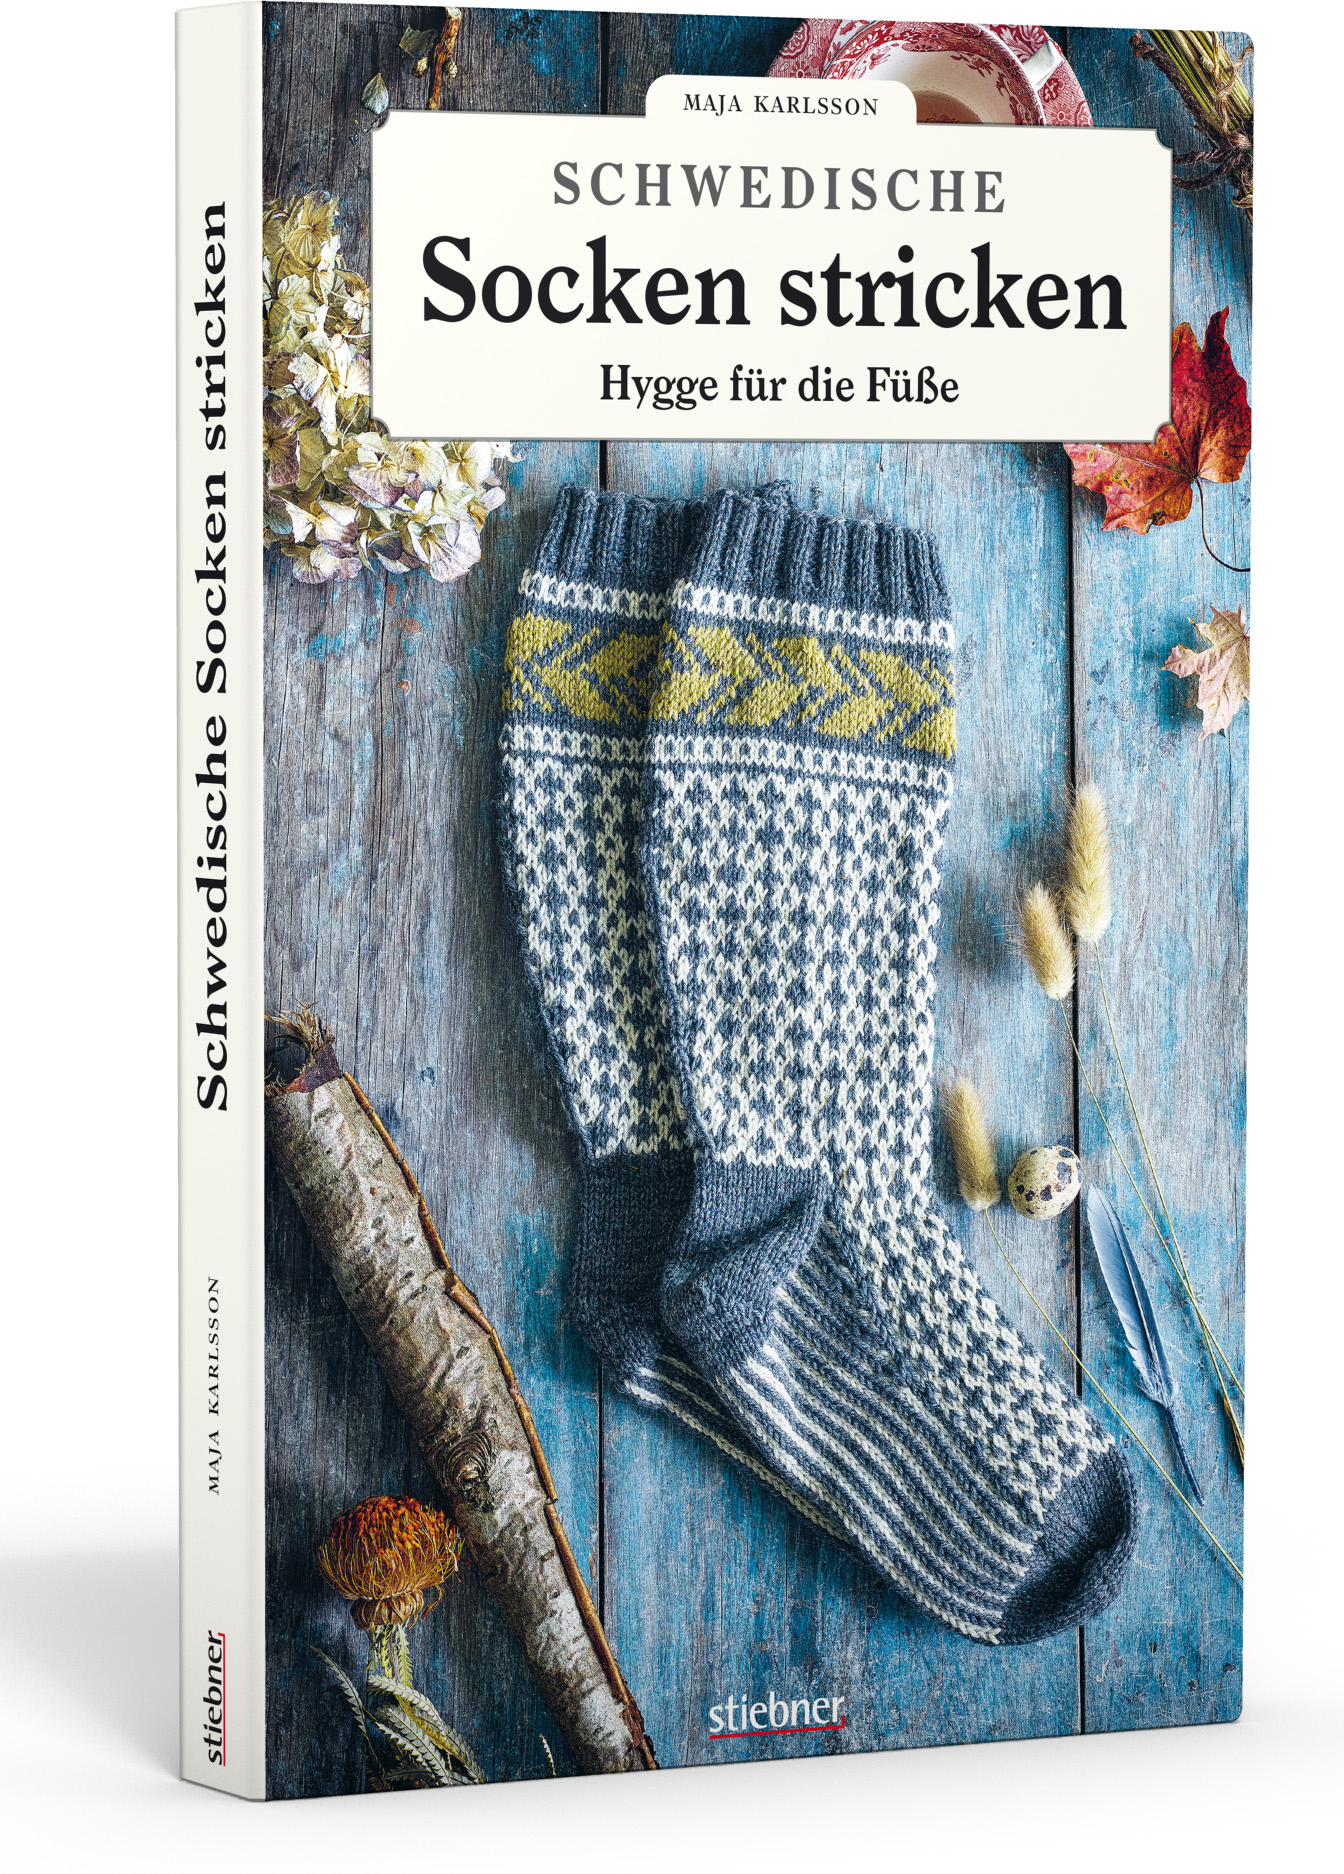 Schwedische Socken stricken (Maja Karlsson)